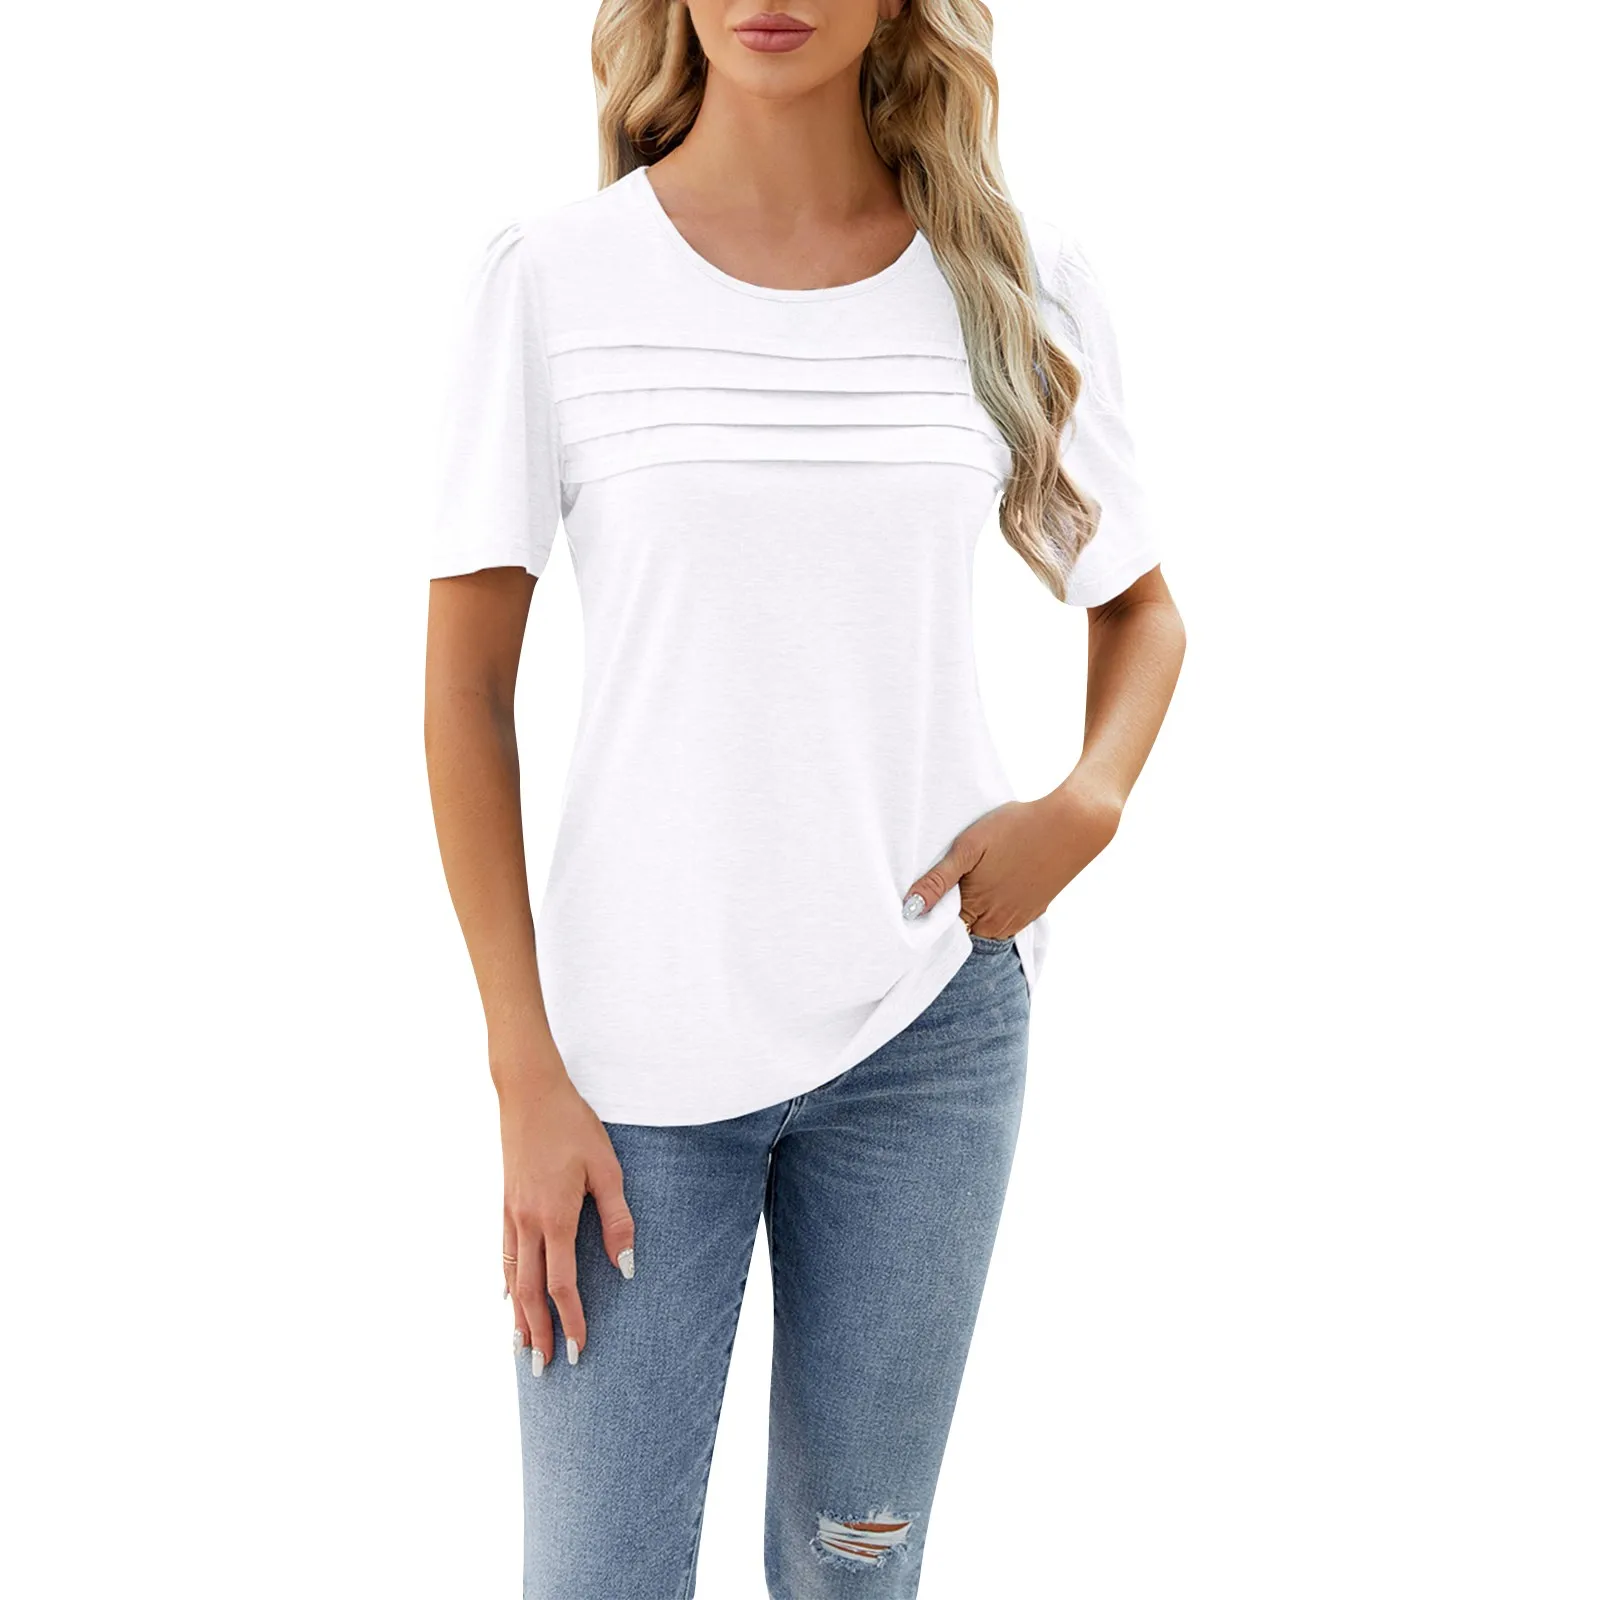 

Женская футболка с U-образным вырезом, модные однотонные плиссированные топы, свободная простая повседневная футболка с коротким рукавом, базовый универсальный стиль